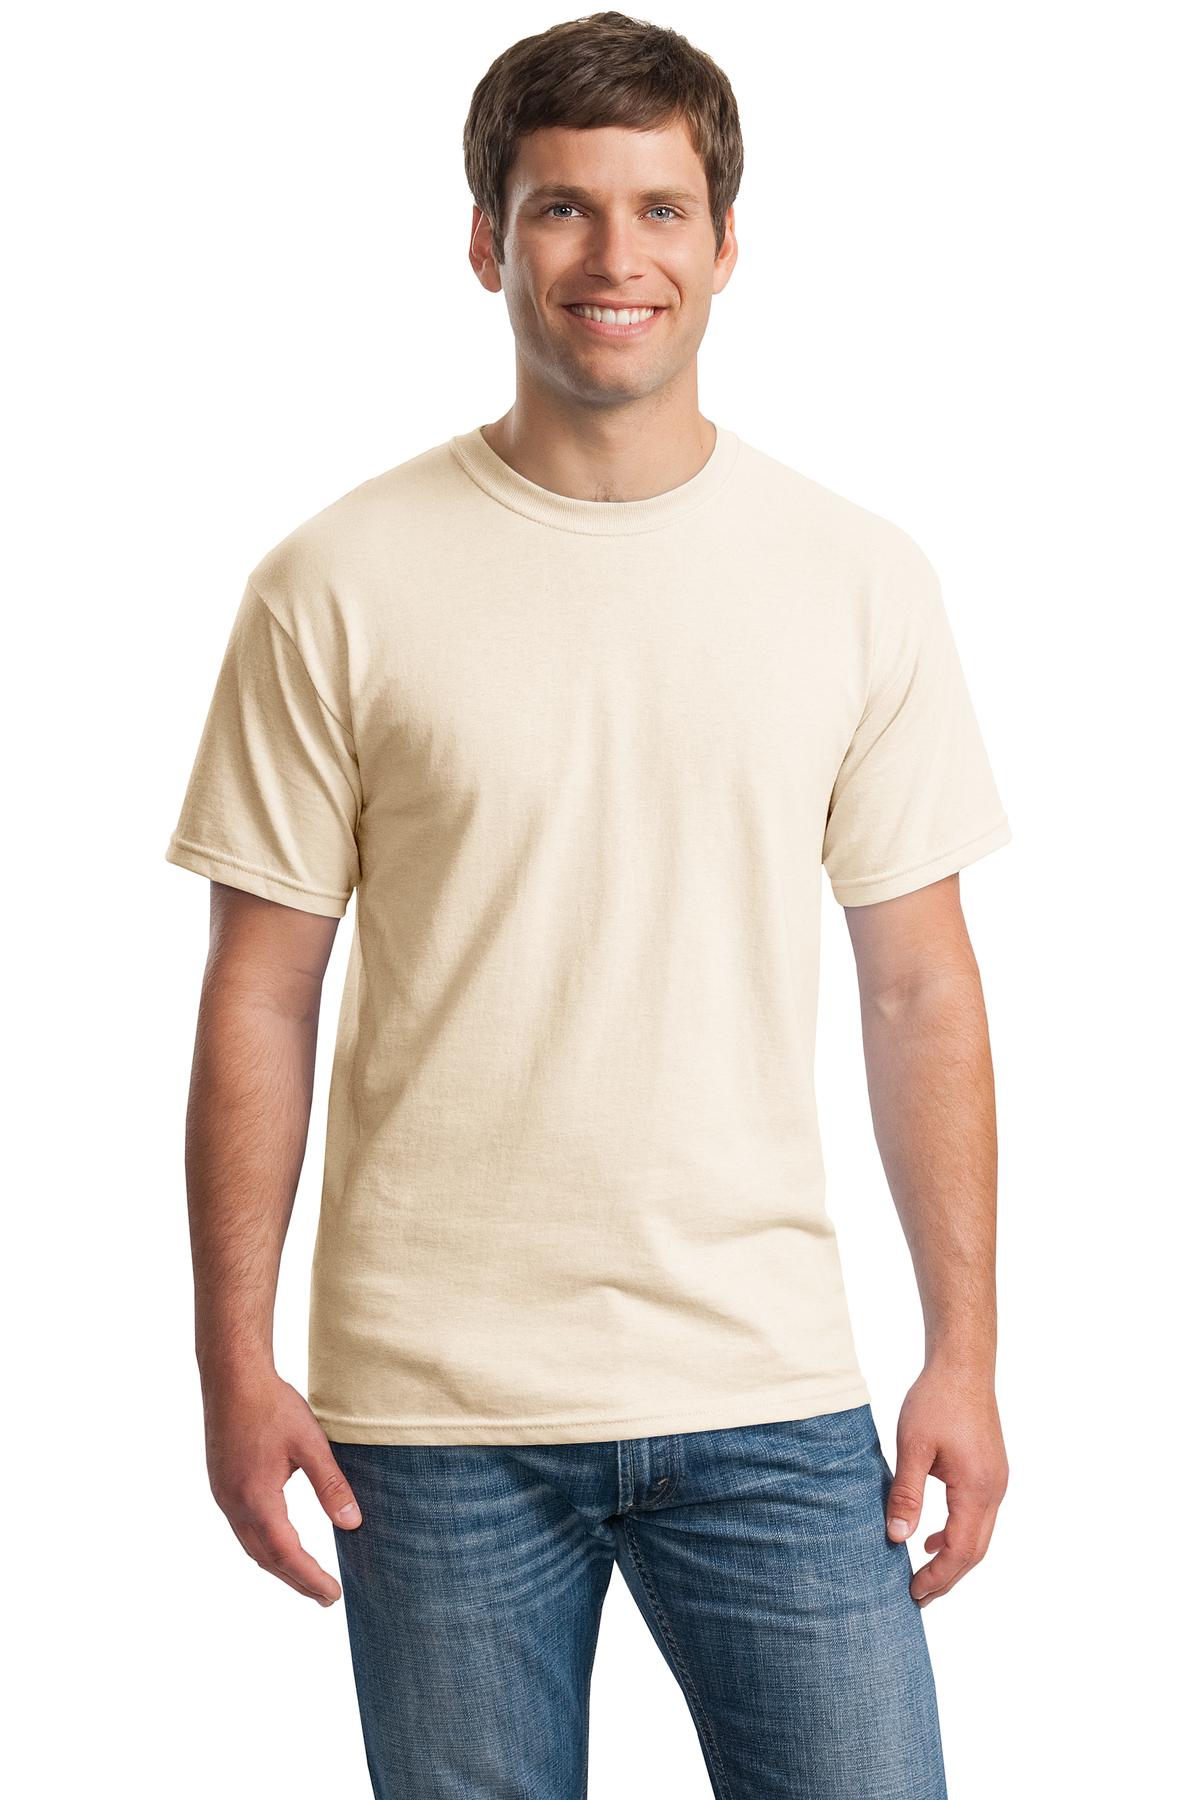 G500 – Gildan – Heavy Cotton 100 Cotton T-Shirt – Safari Sun